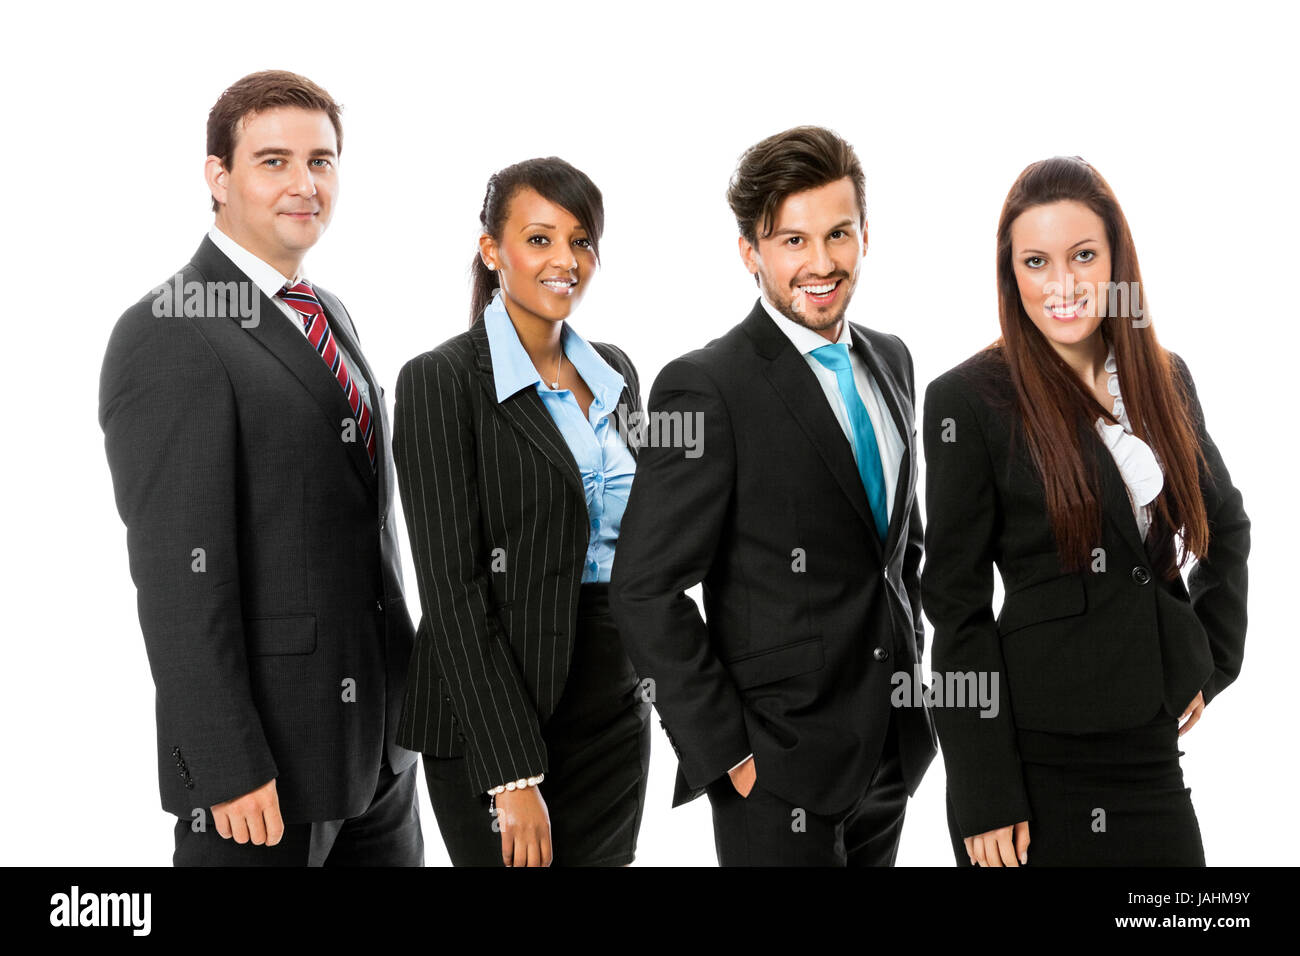 gruppe team mit chef und mitarbeitern geschäft business isoliert vor weißem hintergrund Stock Photo